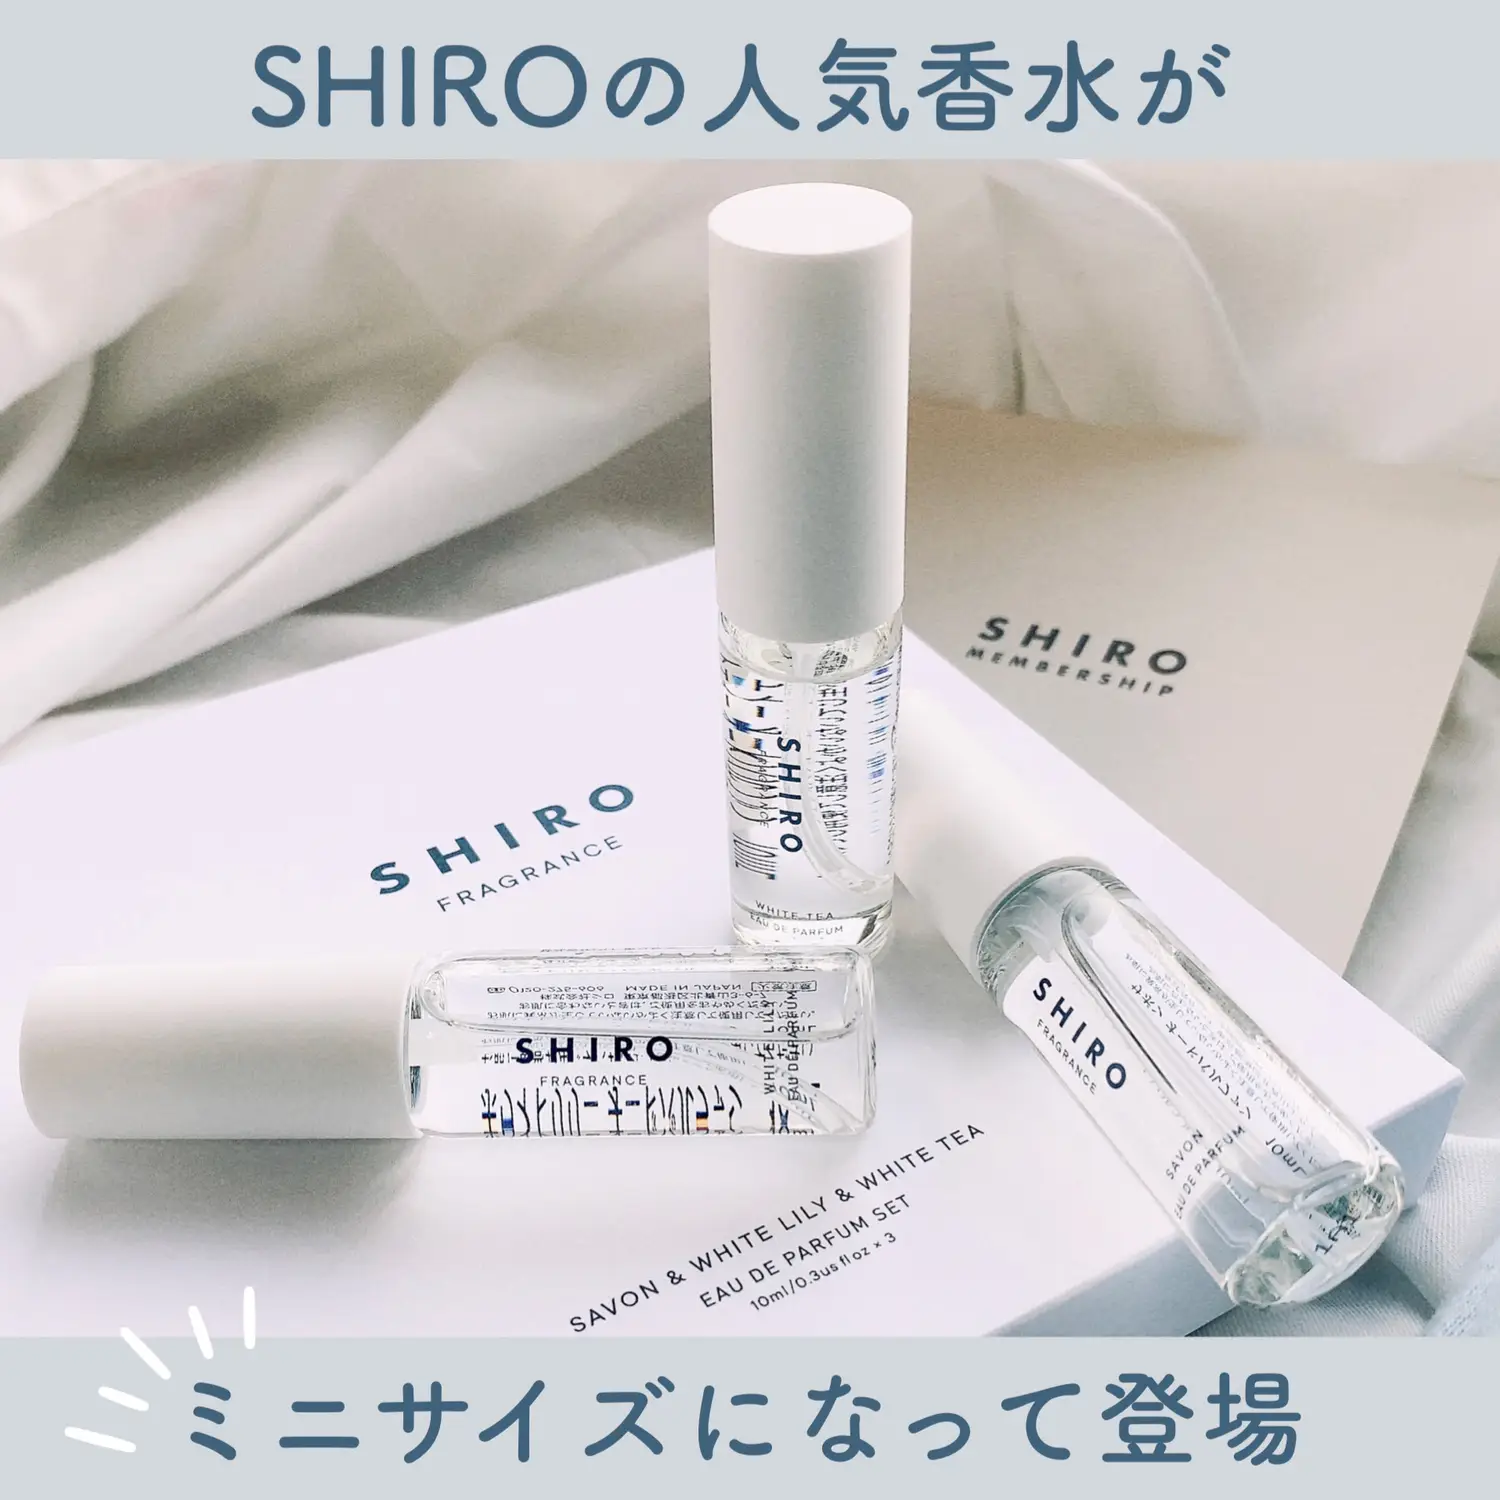 豪華な SHIRO サボン オードパルファン ミニサイズ 10ml